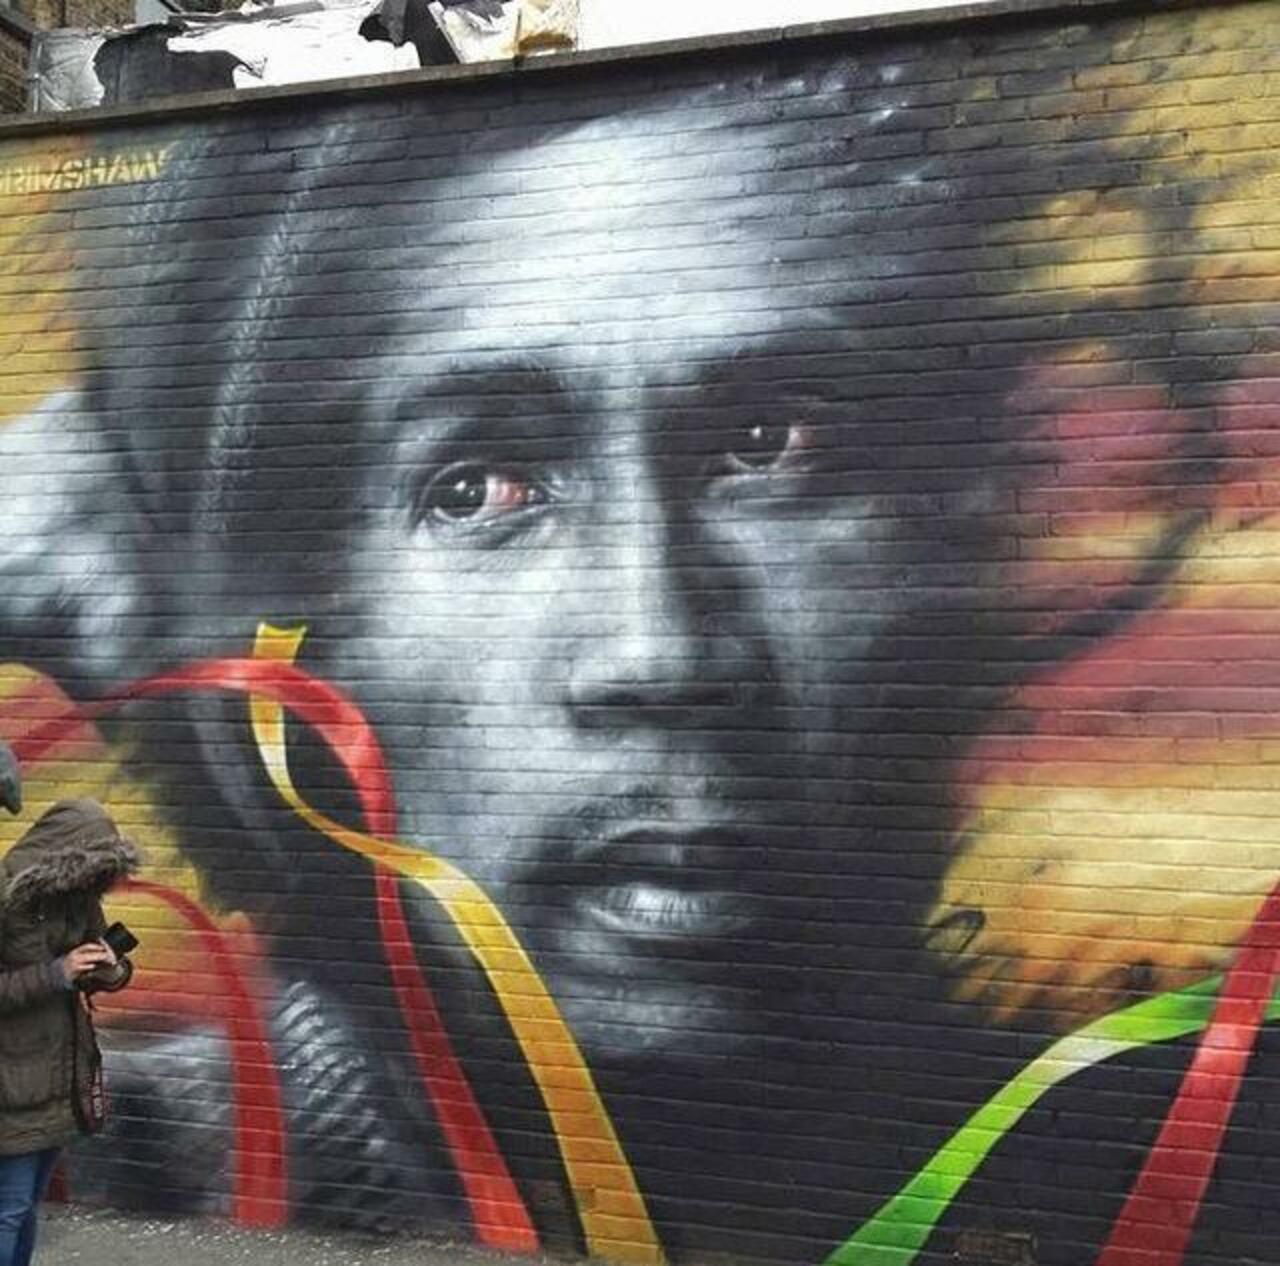 RT @GoogleStreetArt: Bob Marley Street Art portrait by Dale Grimshaw in London 

#art #arte #graffiti #streetart http://t.co/V2C0XJvAcJ